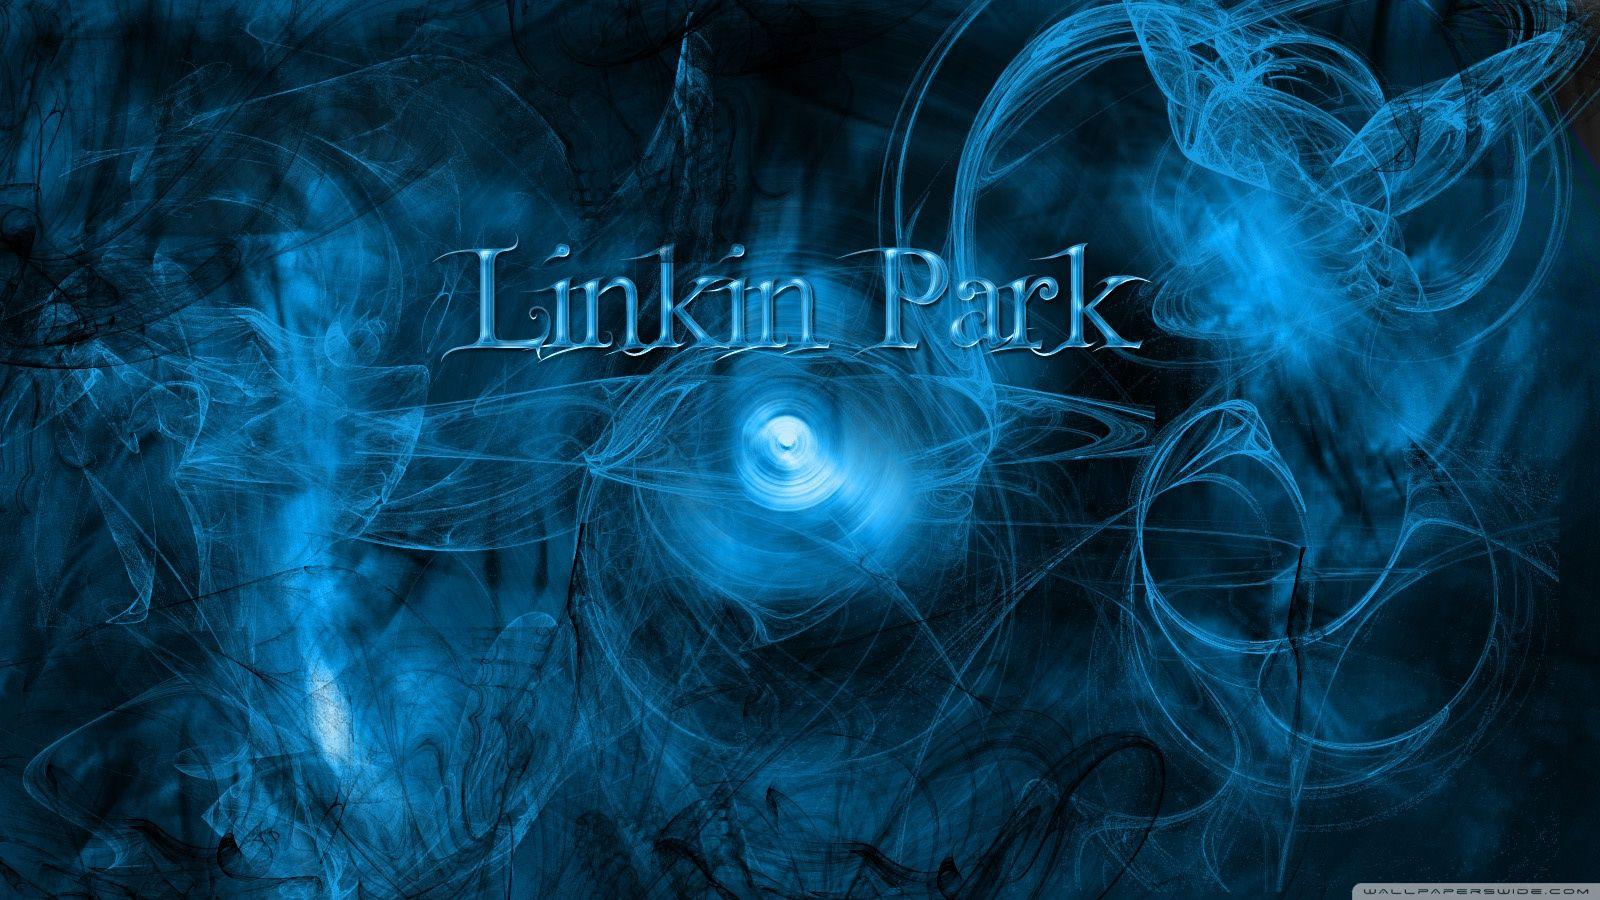 Linkin Park Wall ❤ 4K HD Desktop Wallpaper for 4K Ultra HD TV